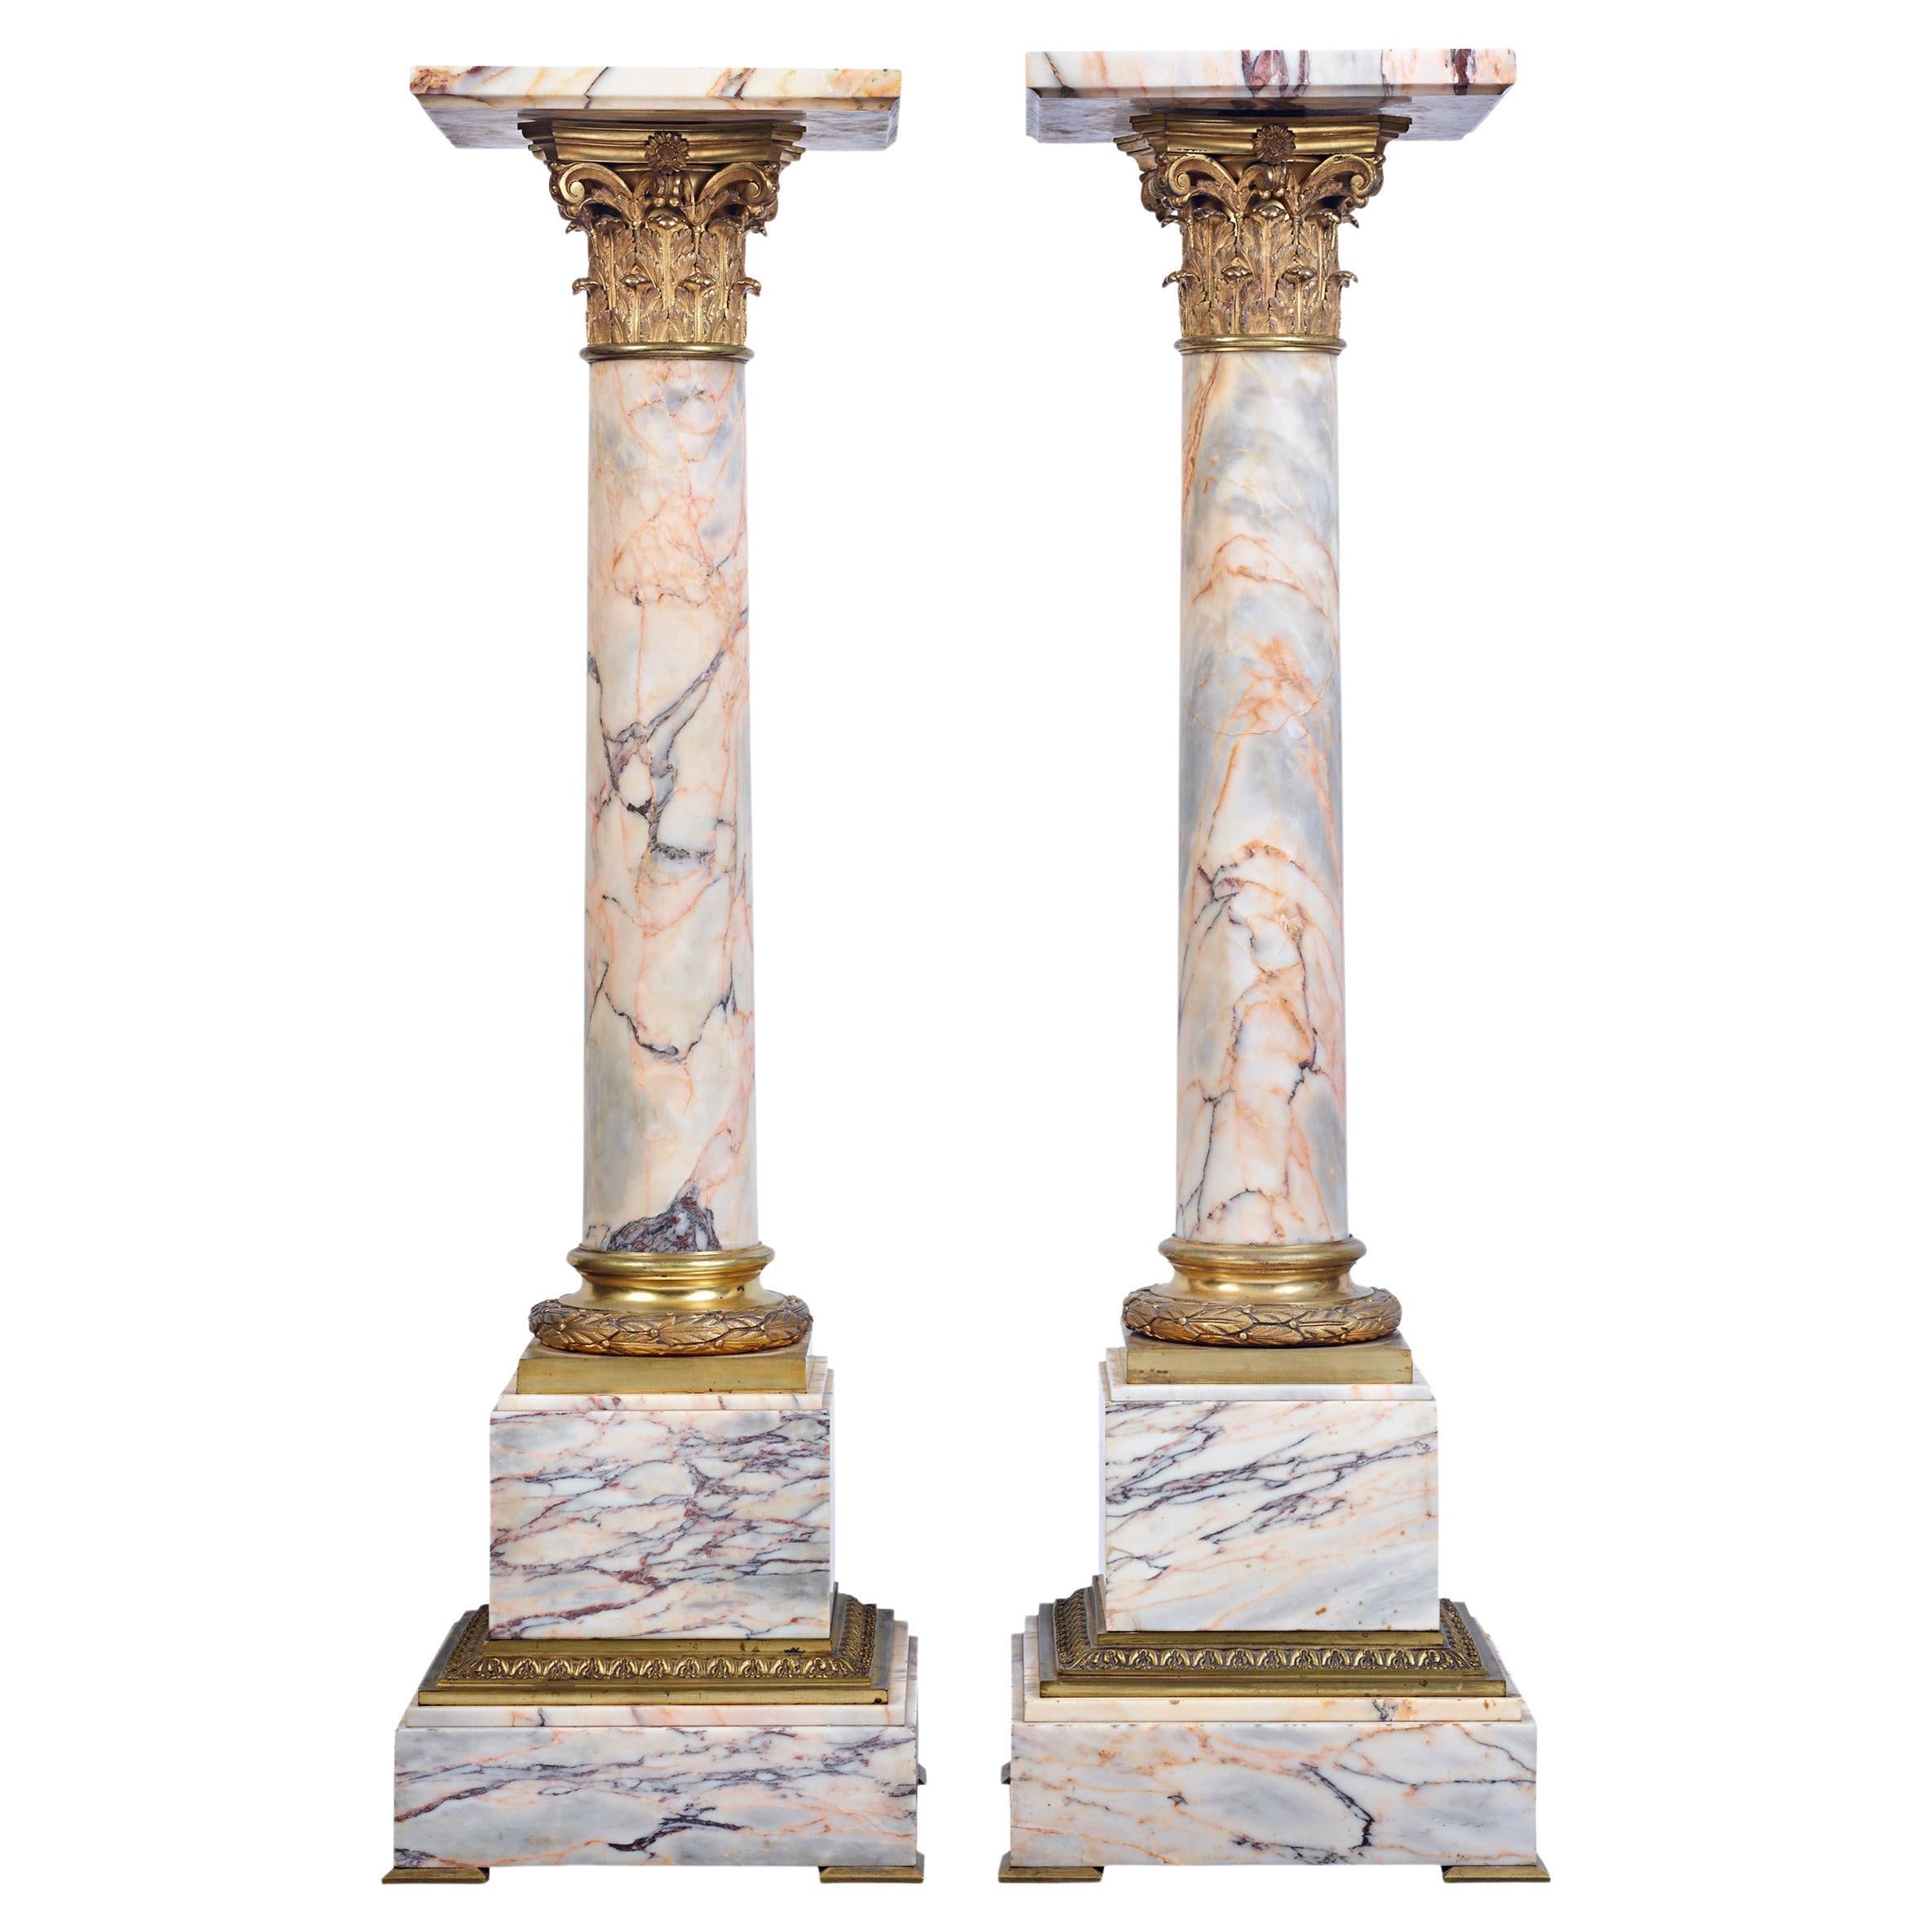 Piédestaux néoclassiques en marbre et bronze doré